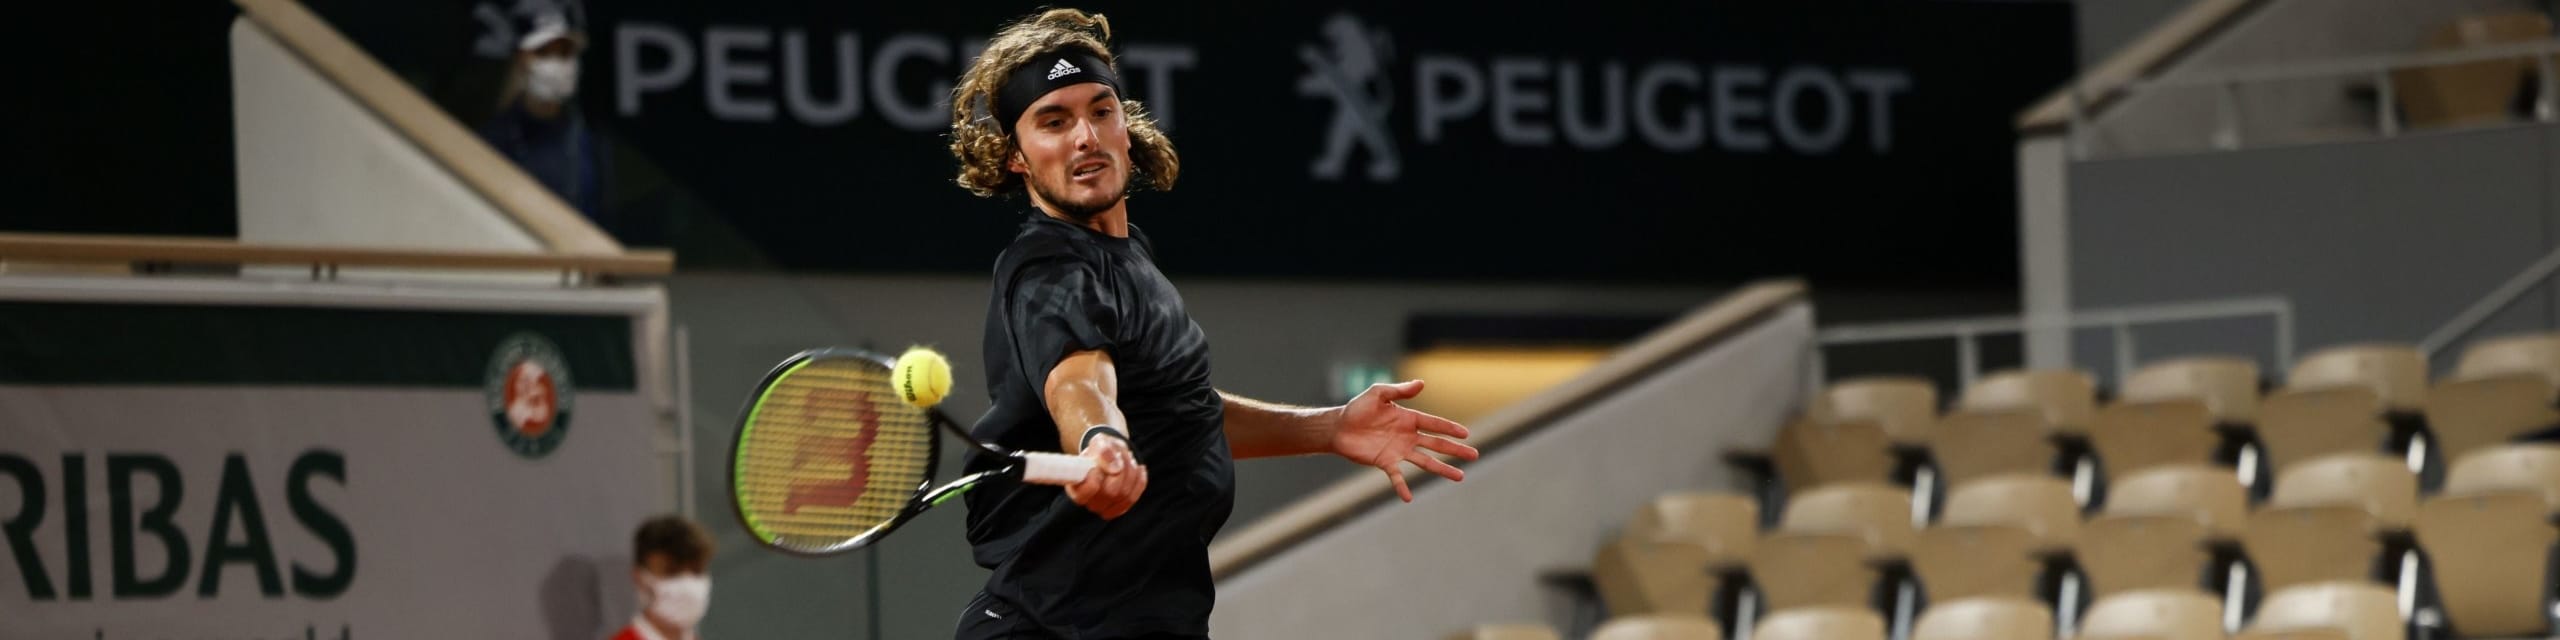 Pronostici Roland Garros, semifinali uomini: Dieguito può impensierire Nadal, Tsitsi insidia Nole